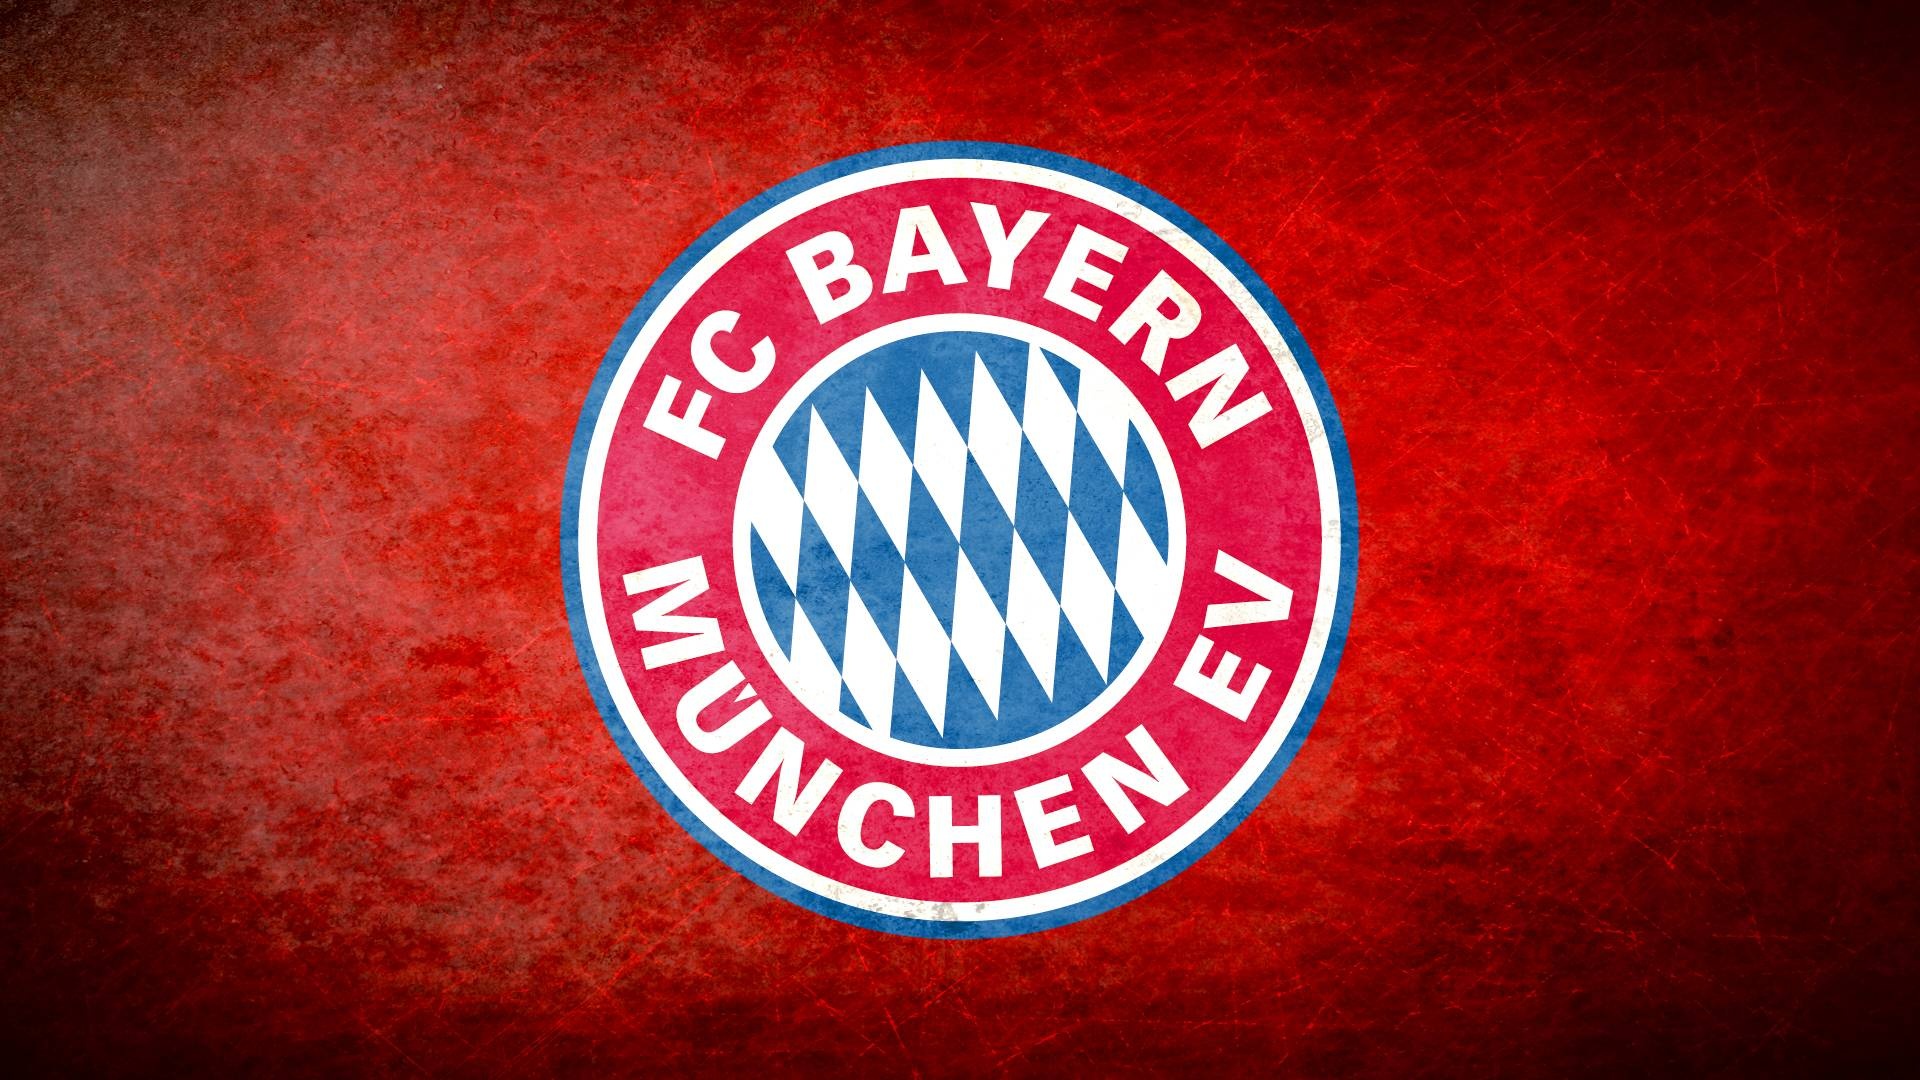 Bayern Munchen FC: First European Cup Winners' Cup title, 1967. 1920x1080 Full HD Wallpaper.